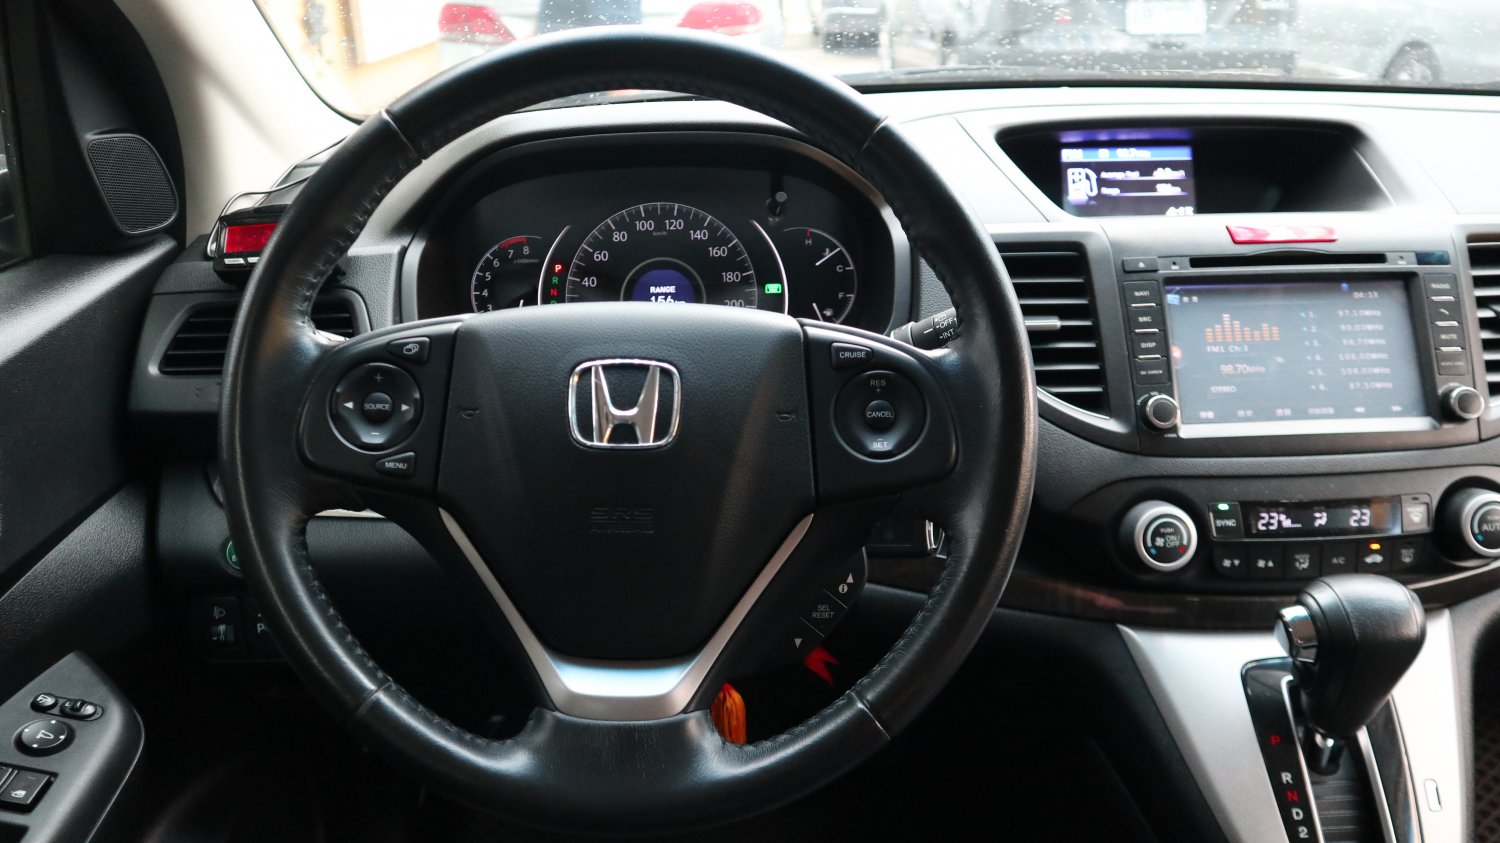 Honda 本田 ／ CR-V ／ 2012年 ／ 2012年Honda CRV 黑色 本田中古車 ／ MG車庫(台南)